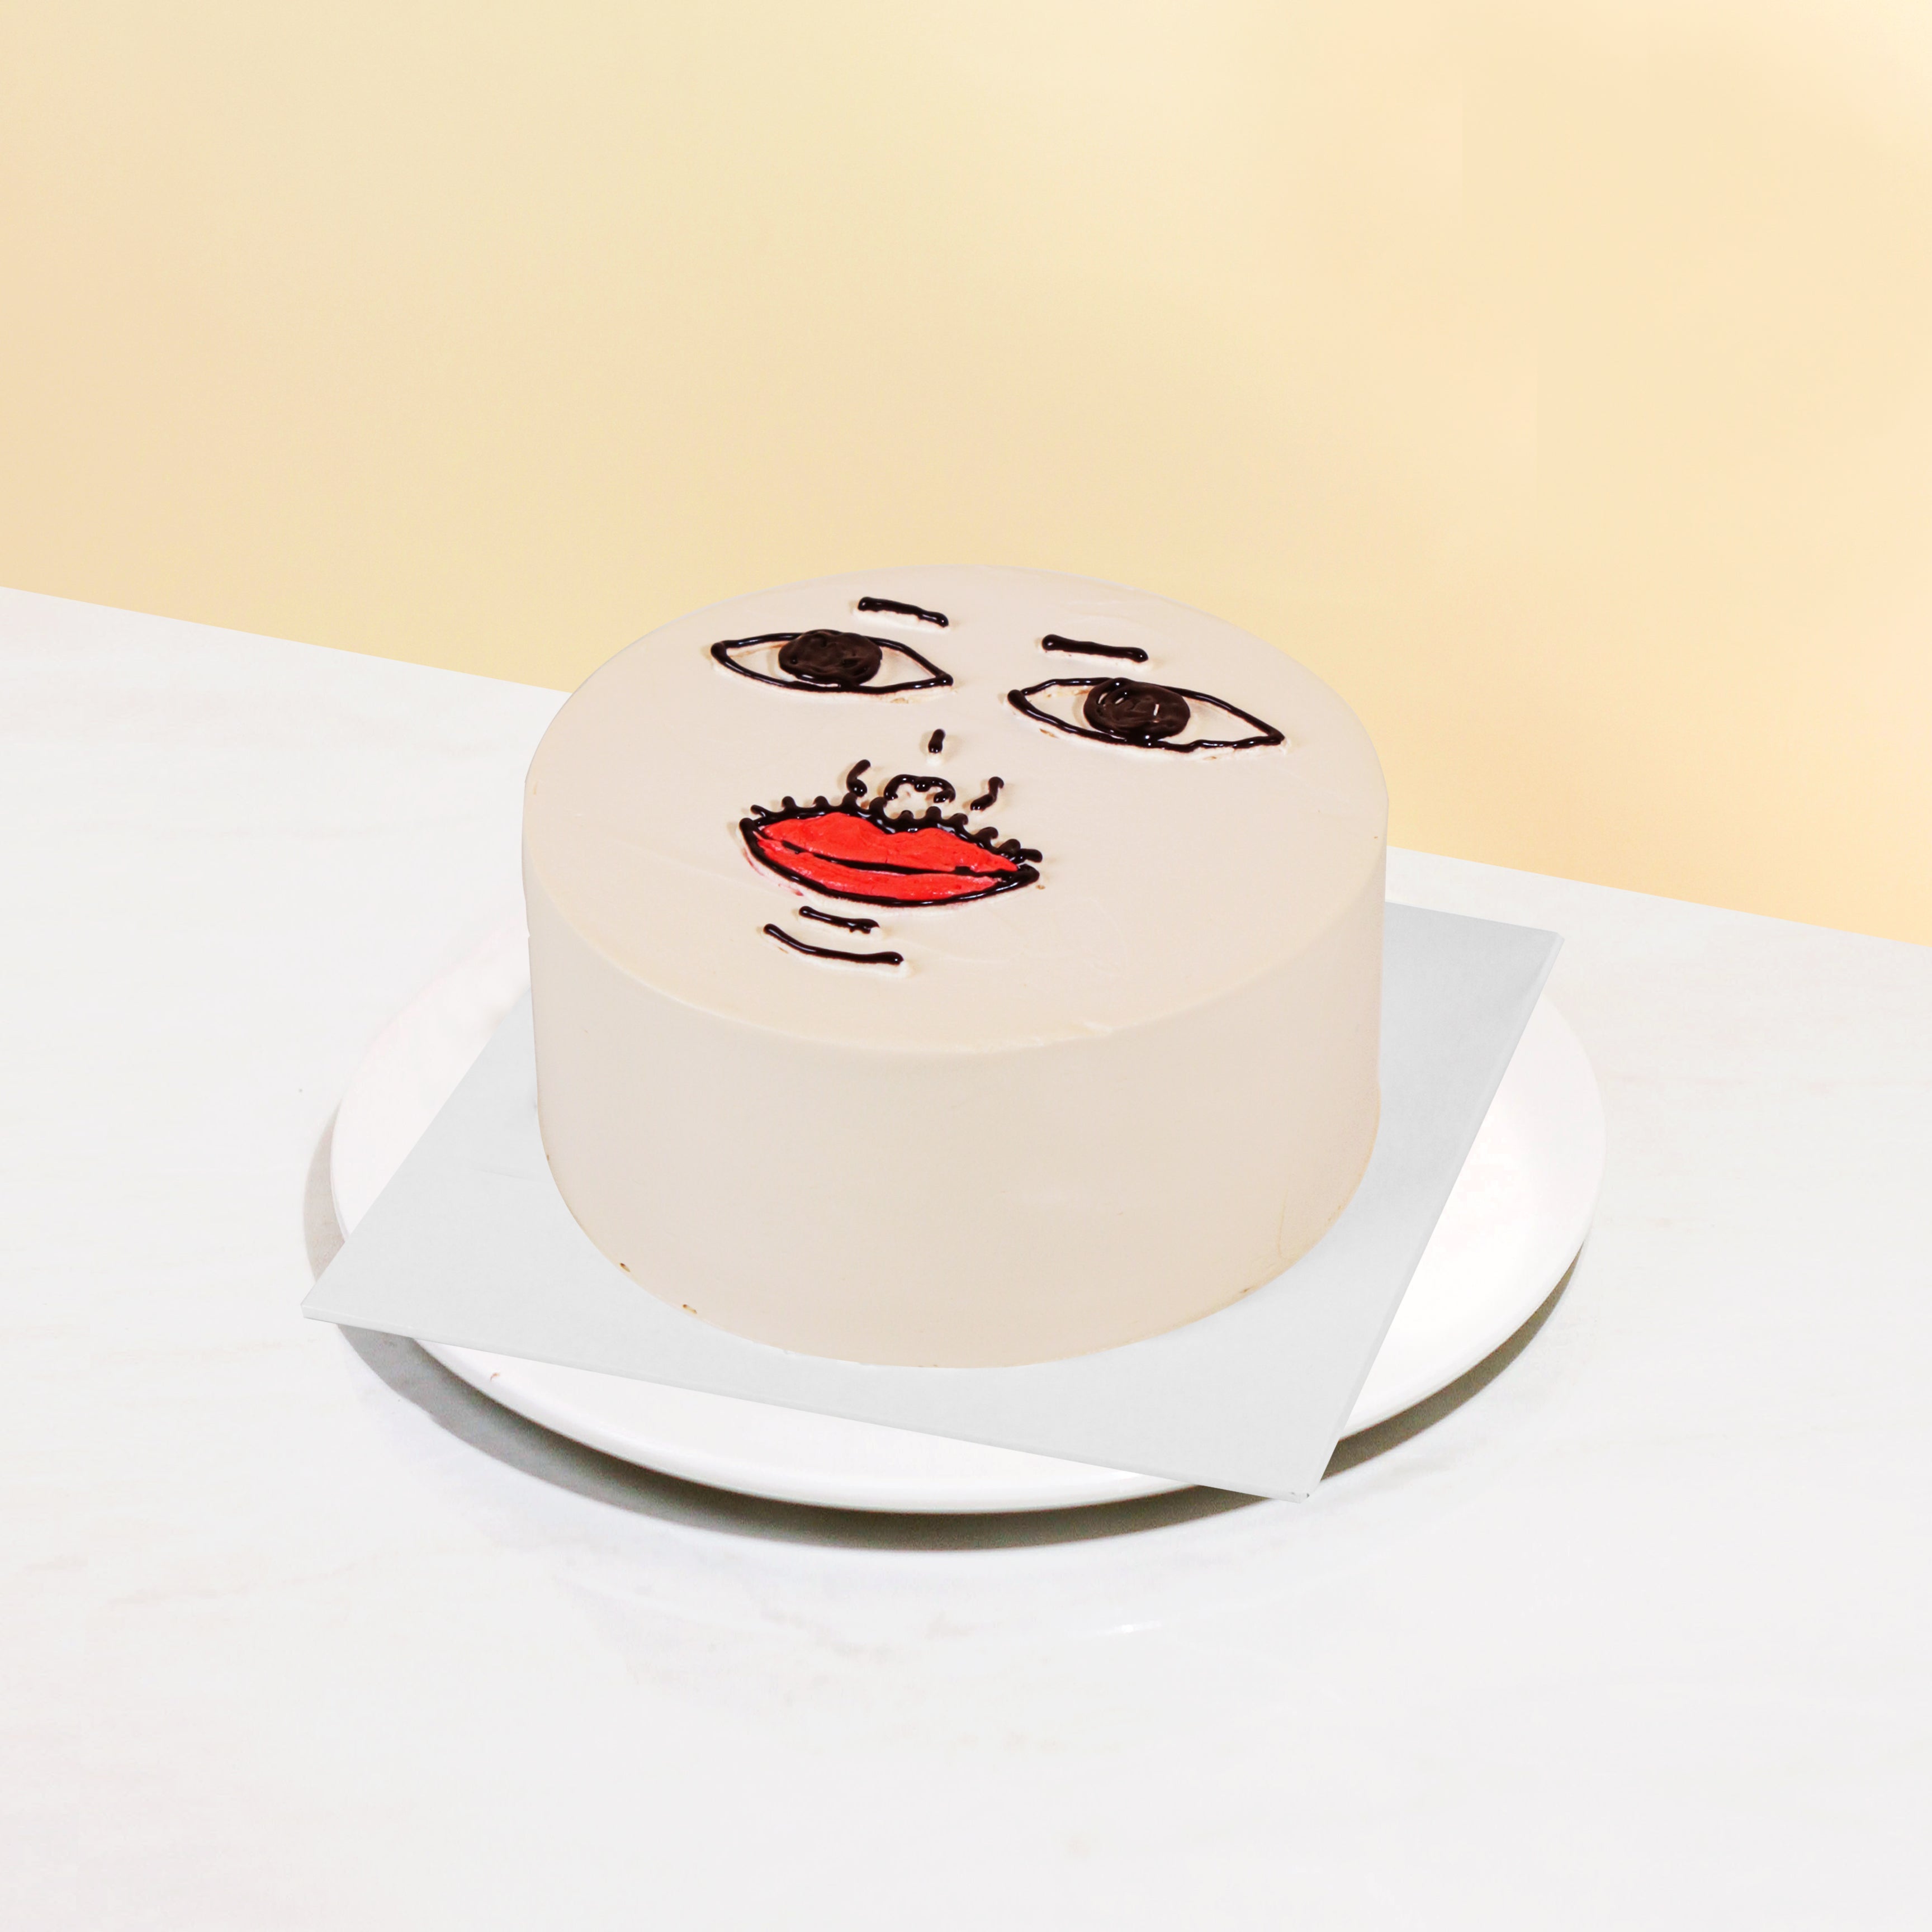 ASMR: EATING WASHROOM CAKE, POTTY CAKE, POO CAKE, TATTI CAKE - YouTube